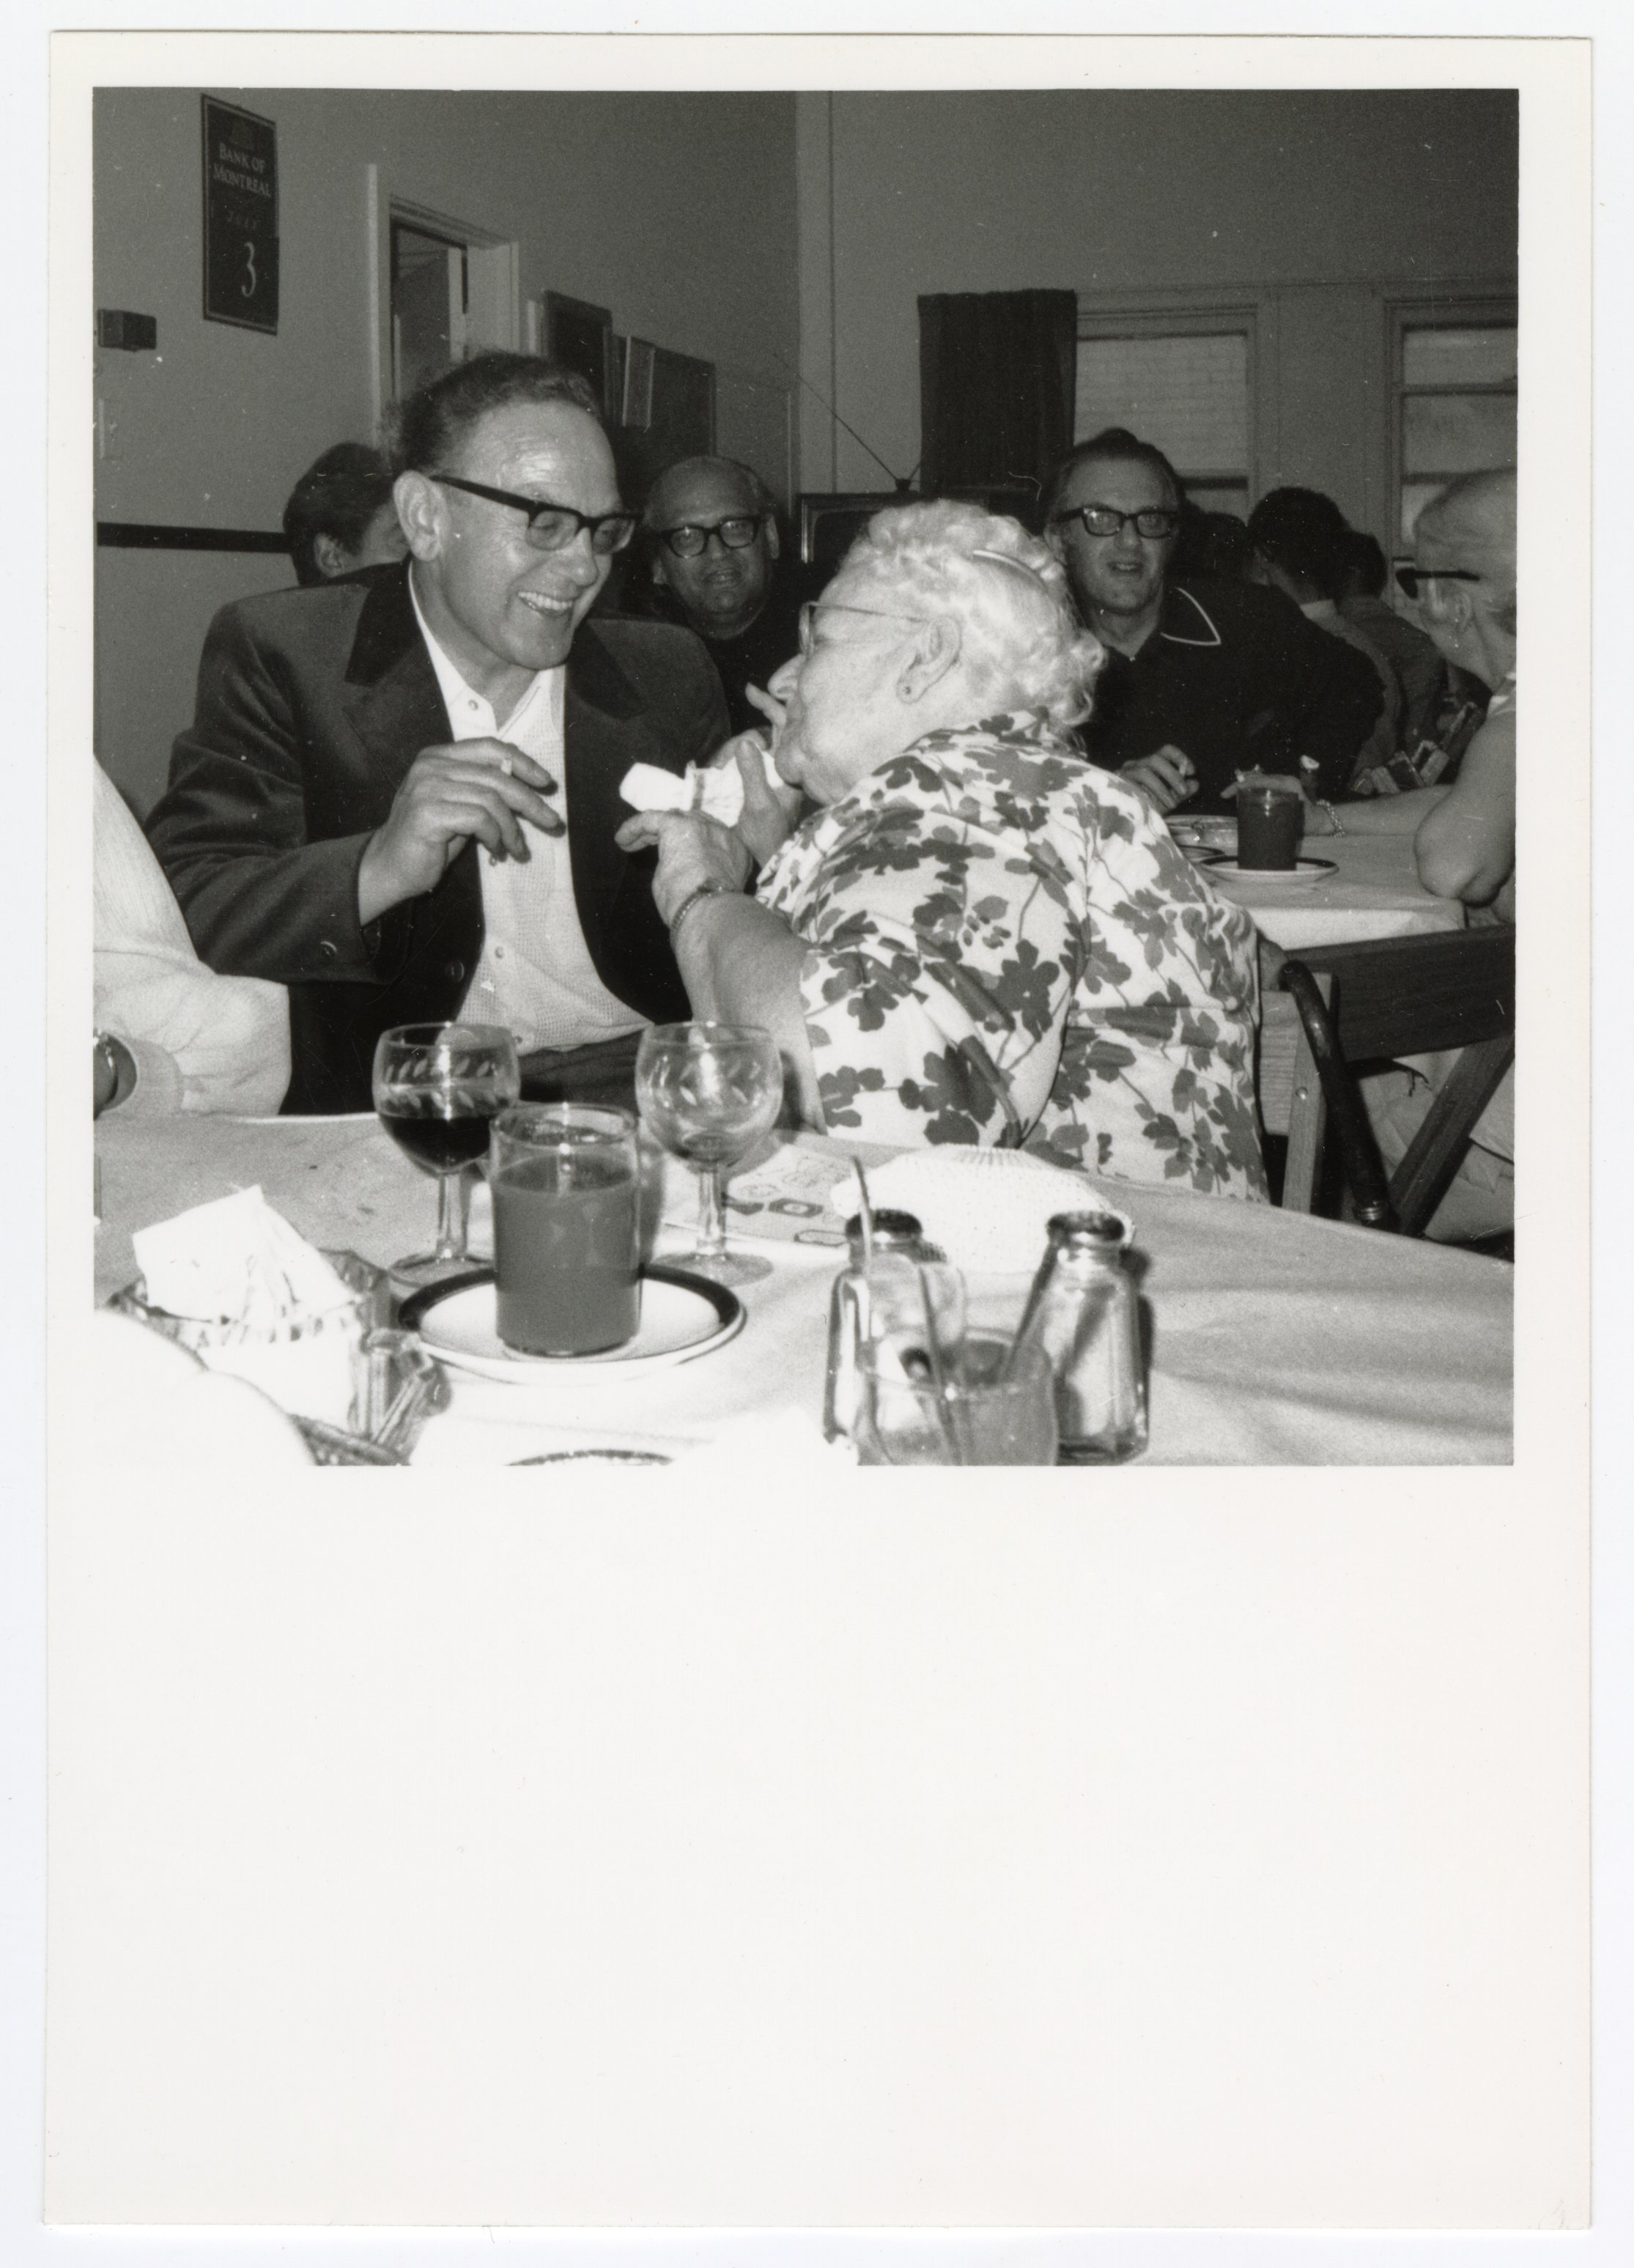 Photographie de membres d'Emmaüs discutant durant le repas de la deuxième assemblée mondiale à Montréal (Canada), 1971.